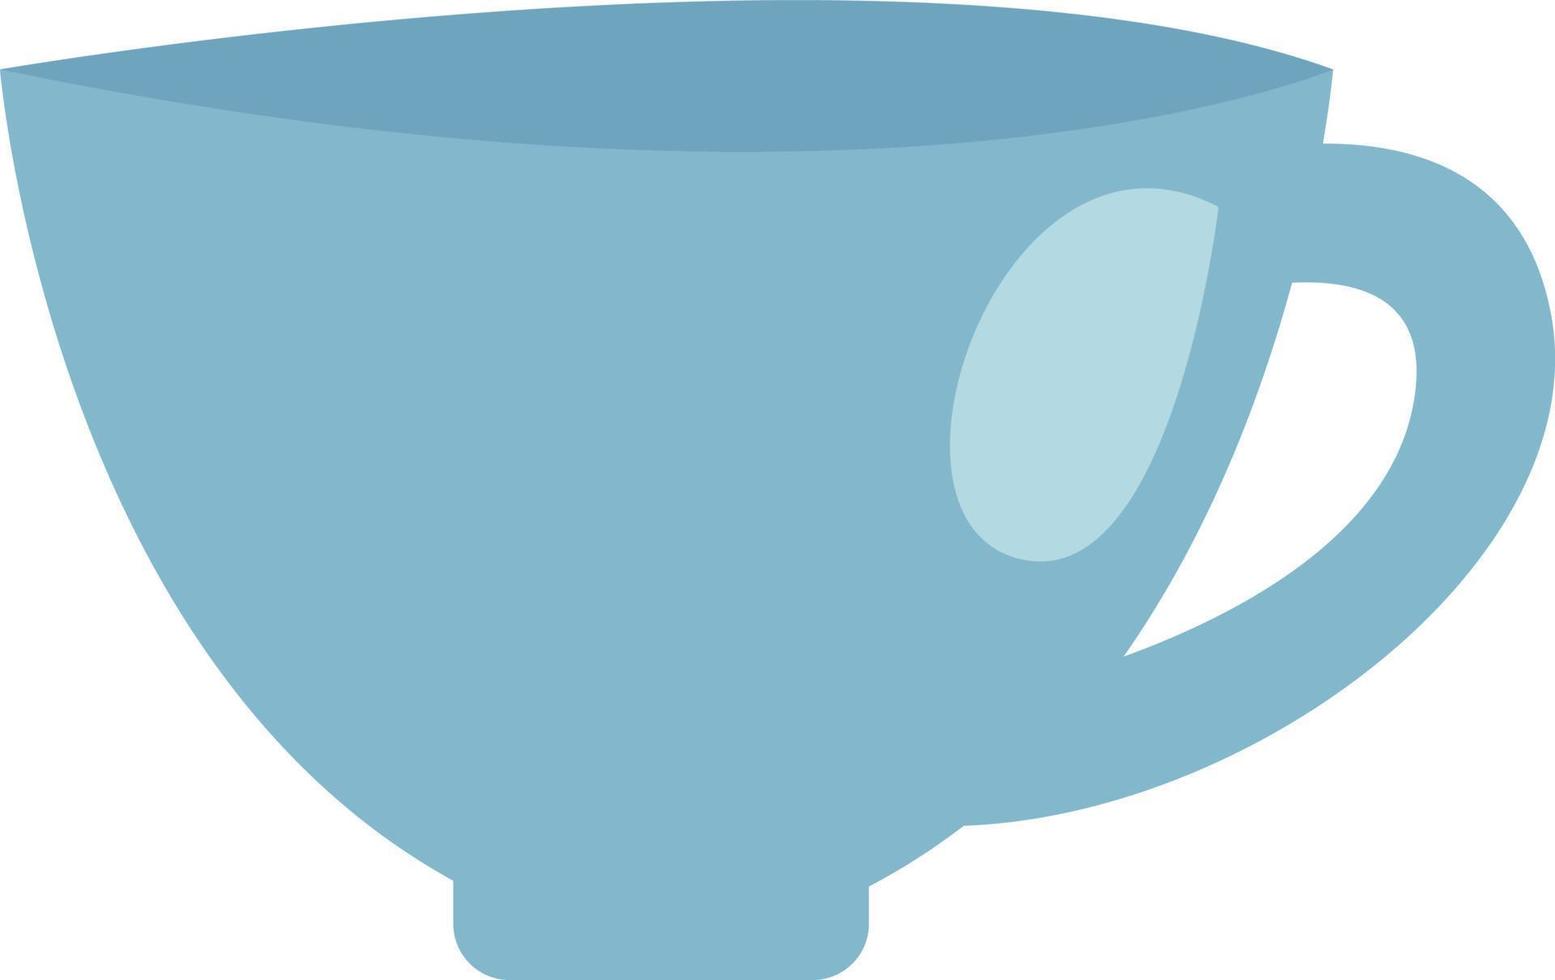 blå kaffe kopp, illustration, vektor, på en vit bakgrund. vektor